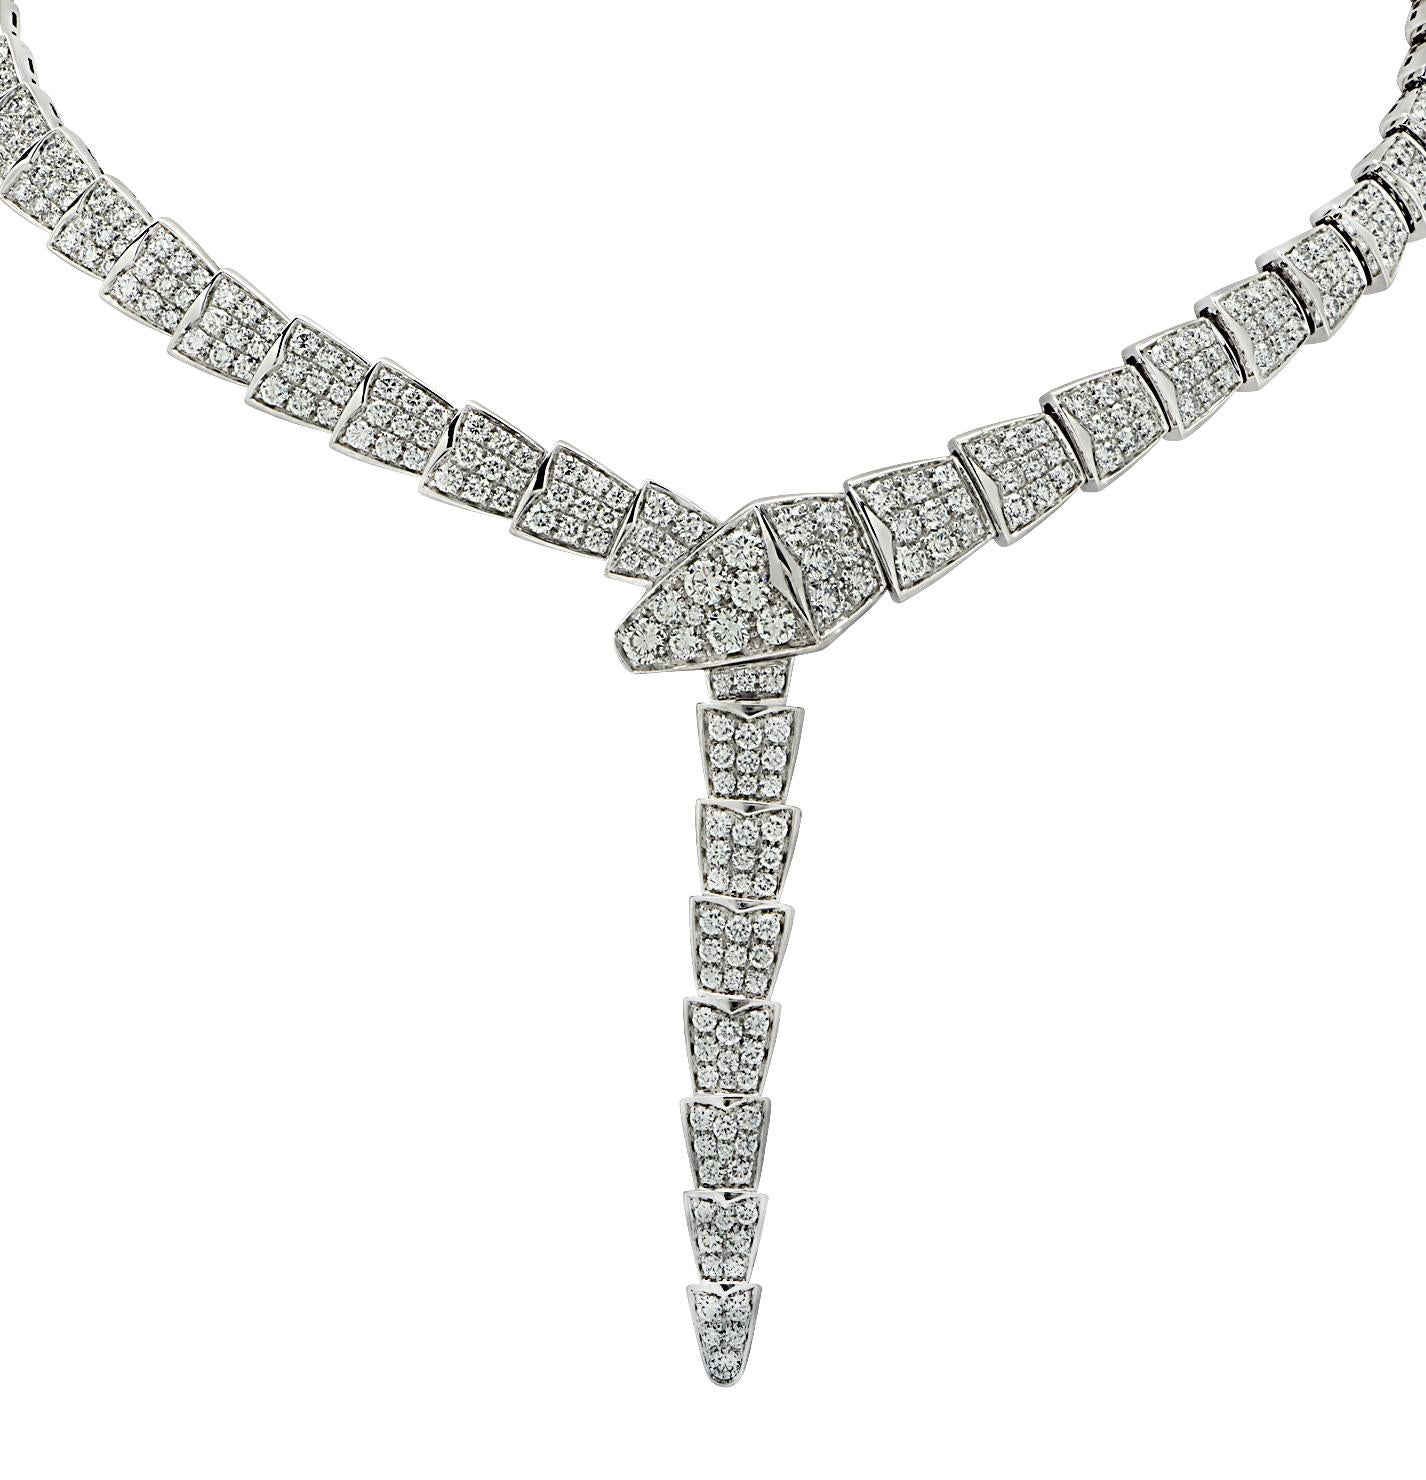 Bvlgari Serpenti Viper 14.74 Carat Diamond Necklace  In Excellent Condition For Sale In Miami, FL